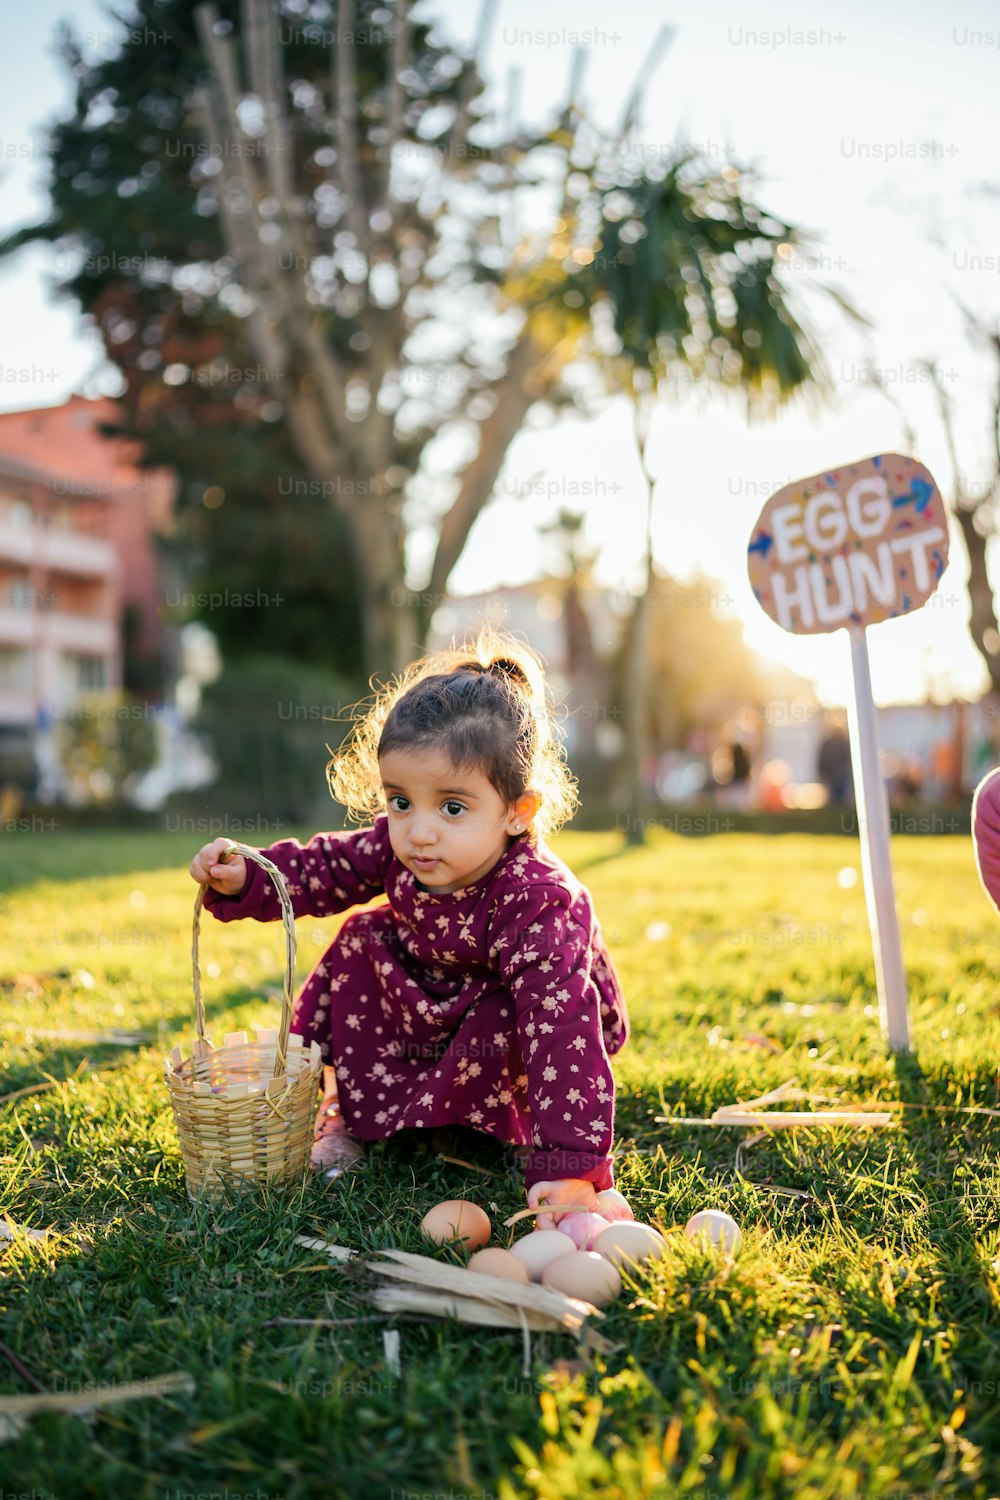 바구니를 들고 풀밭에 앉아 있는 어린 소녀